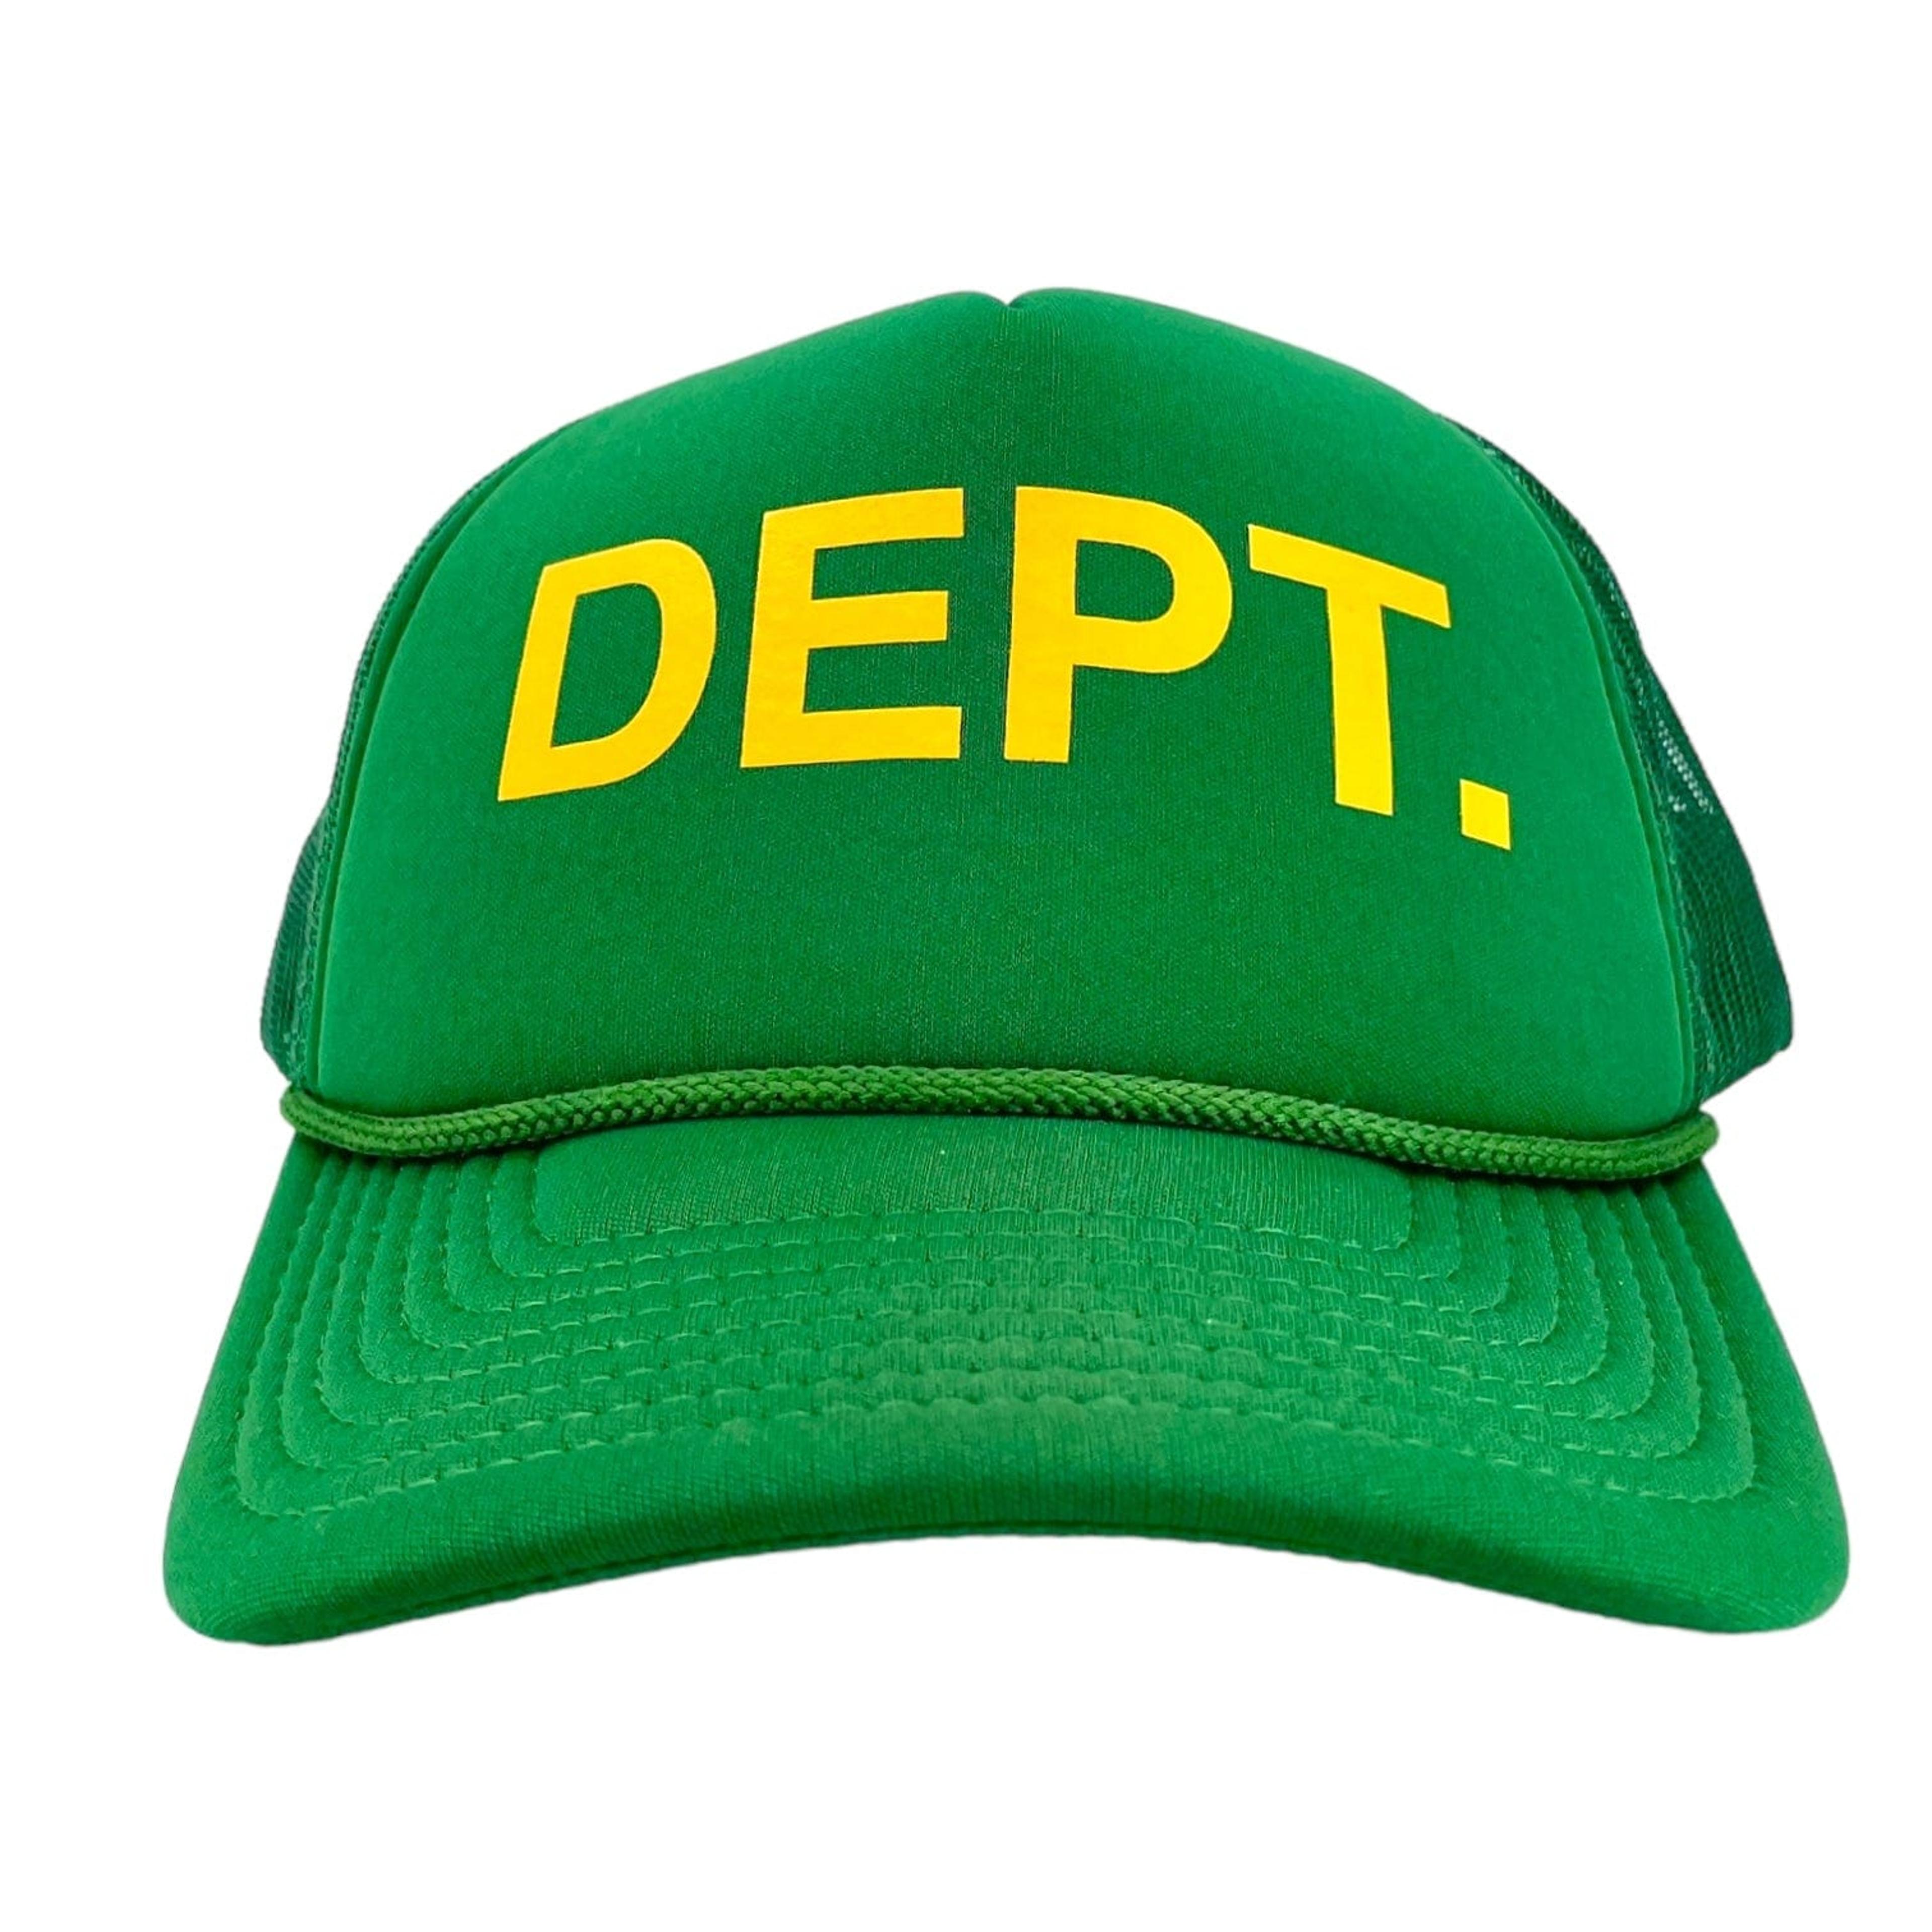 Gallery Department DEPT. Logo Trucker Hat Green Yellow